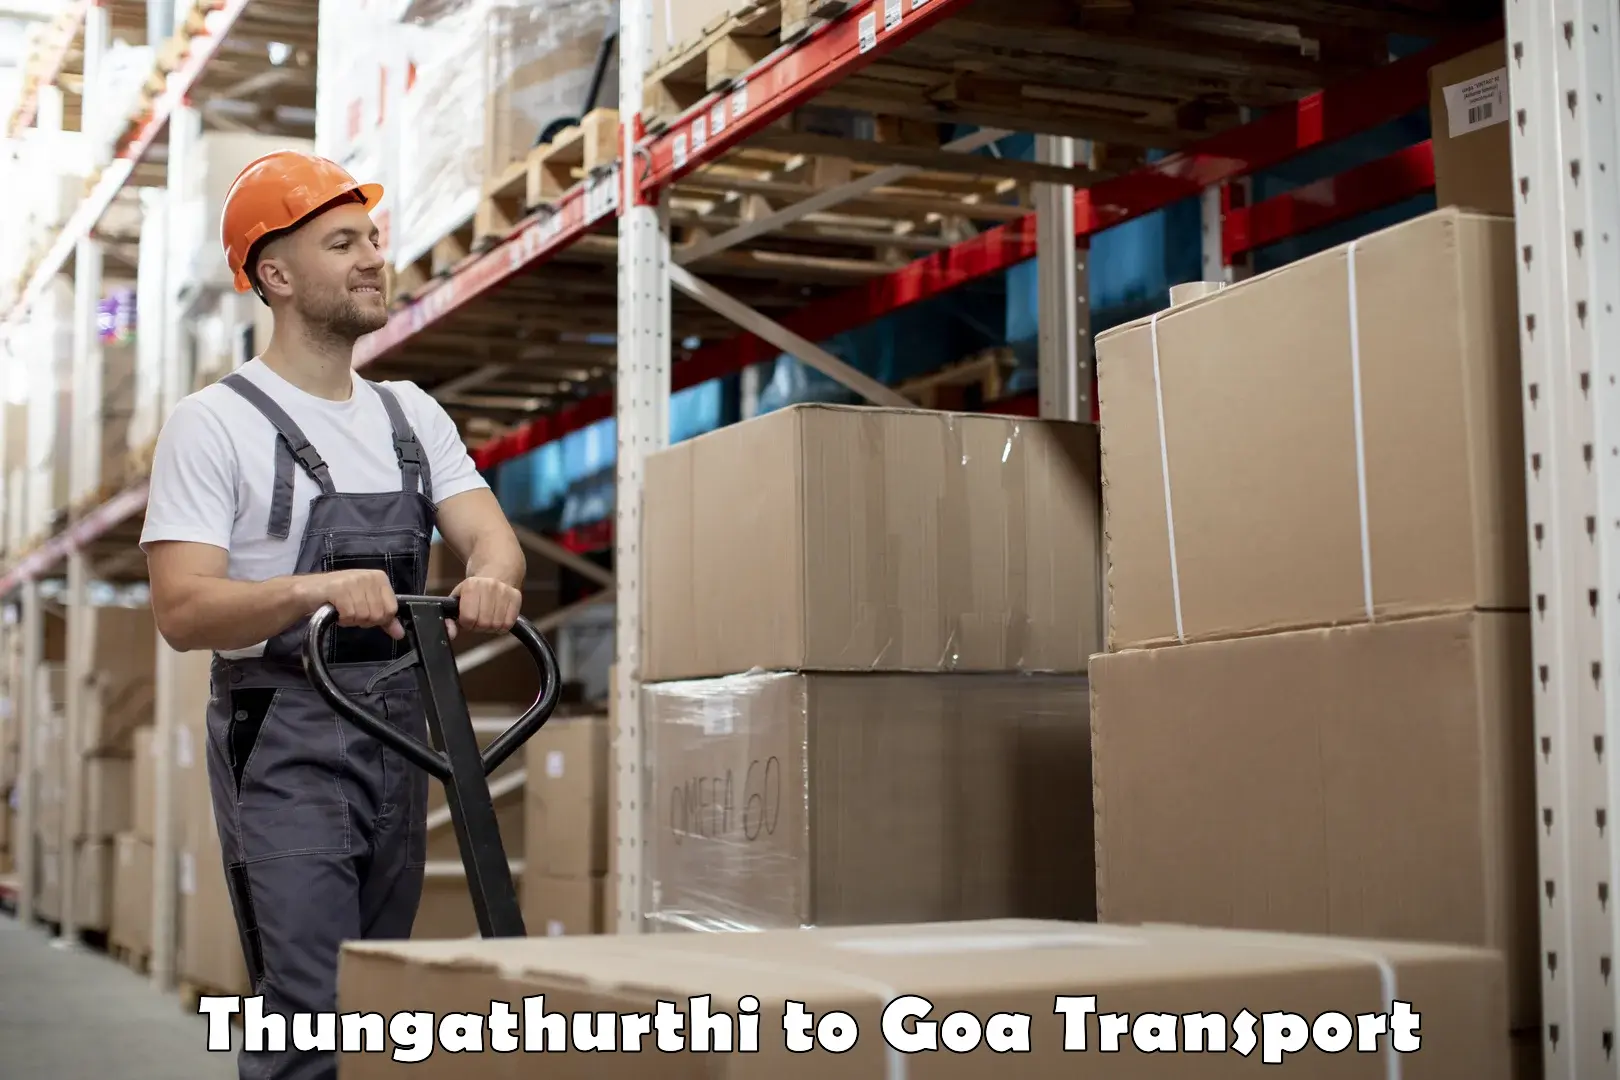 Air freight transport services Thungathurthi to Goa